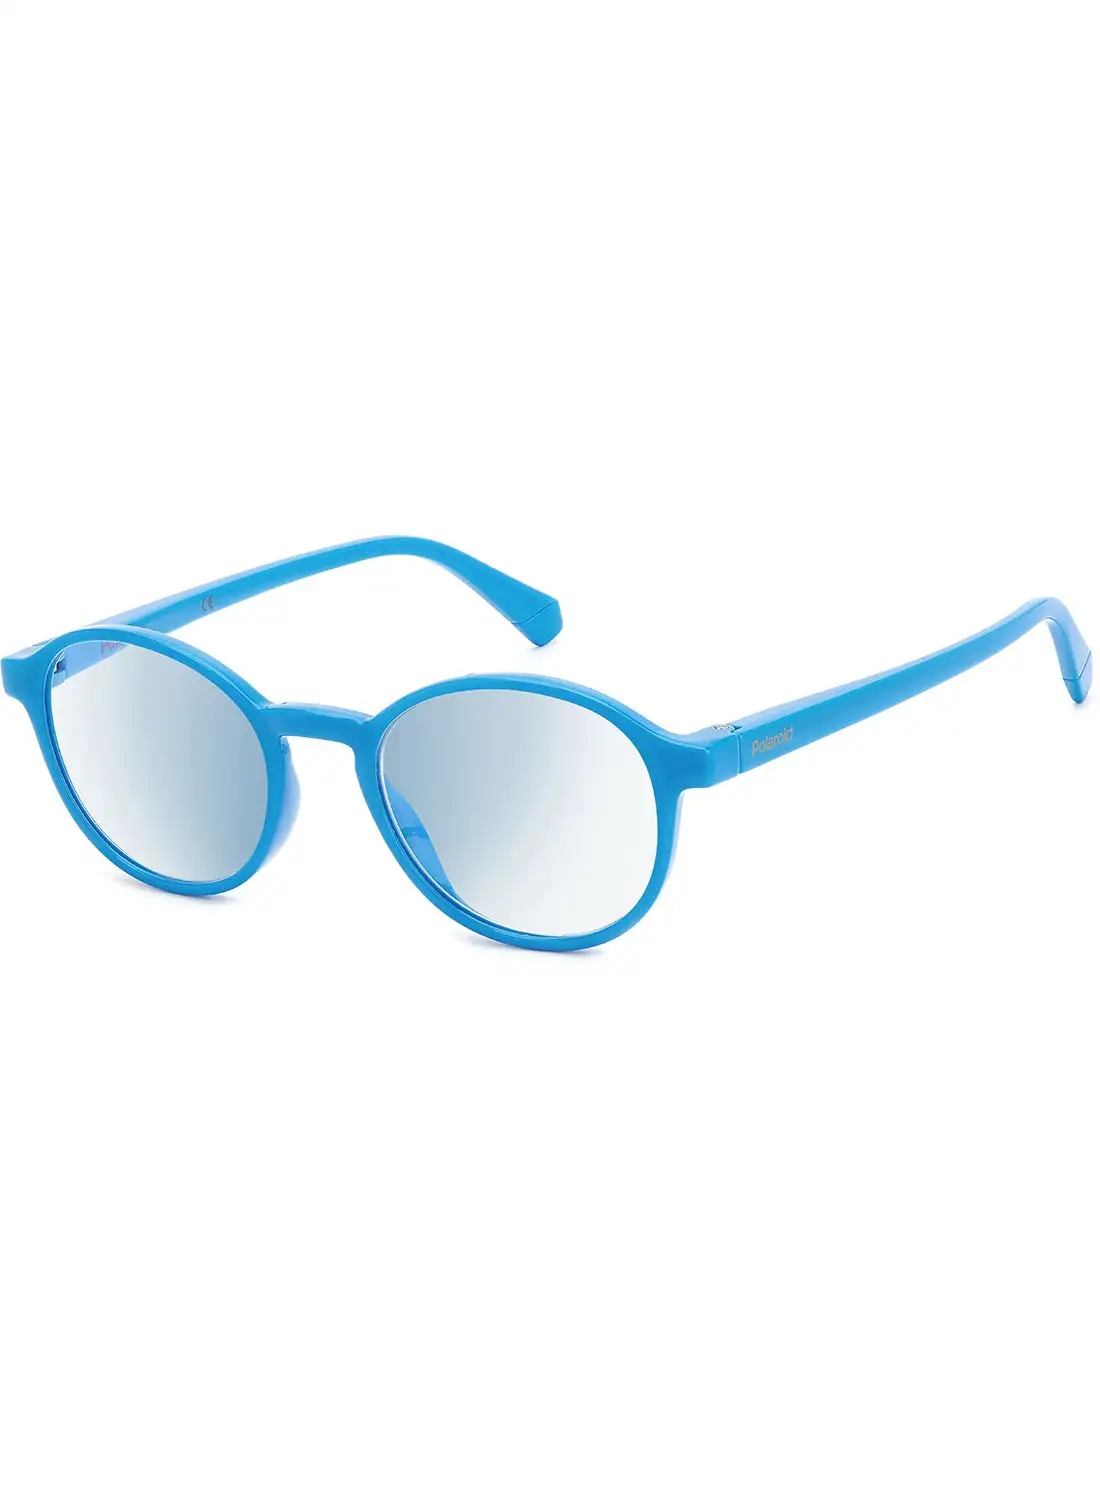 نظارات القراءة بولارويد للجنسين - Pld 0034/R/Bb Azure 48 - مقاس العدسة: 48 ملم